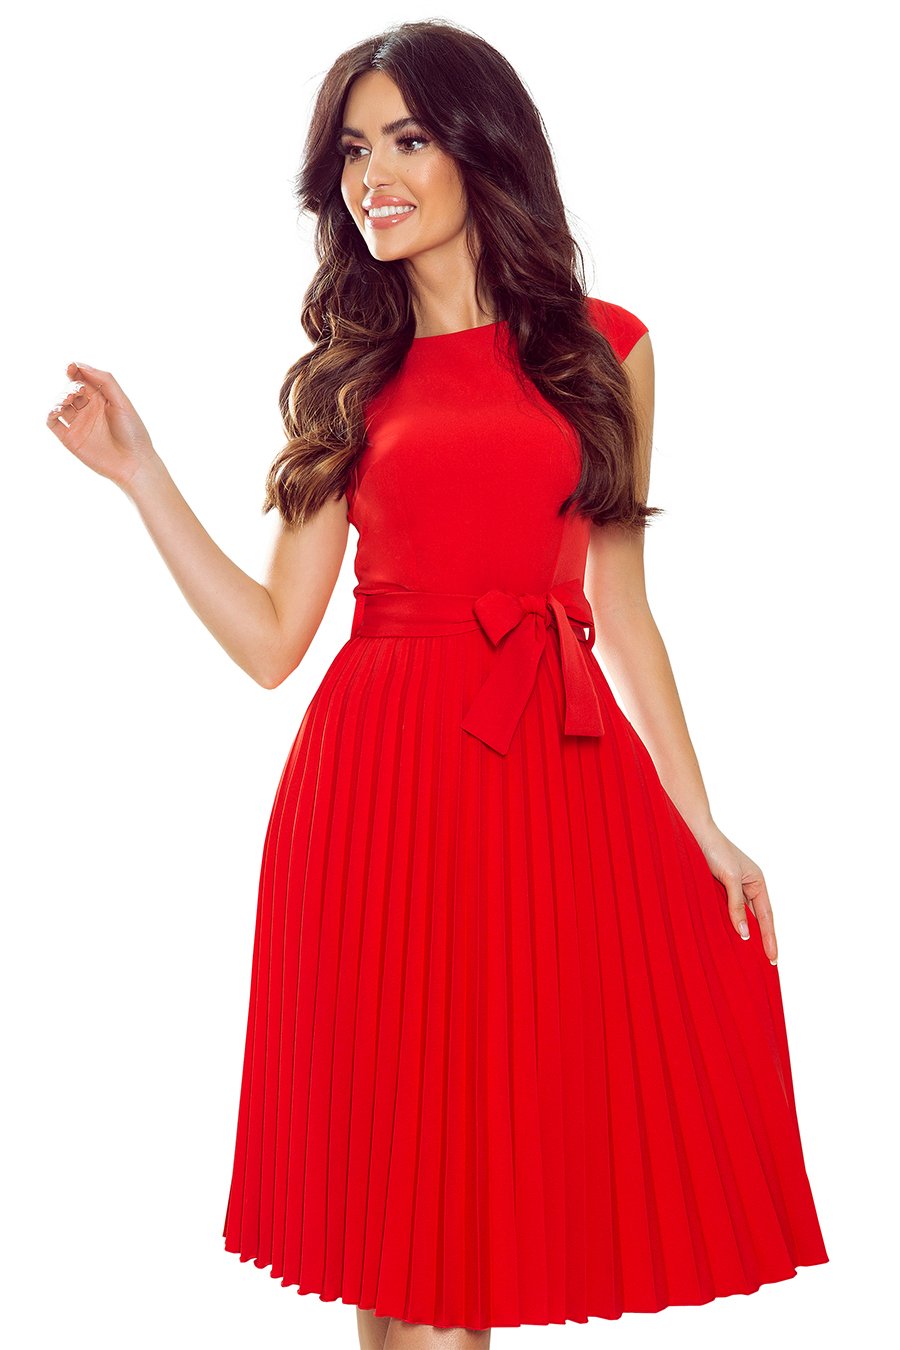 Γυναικείο φόρεμα Annette, Κόκκινο 2